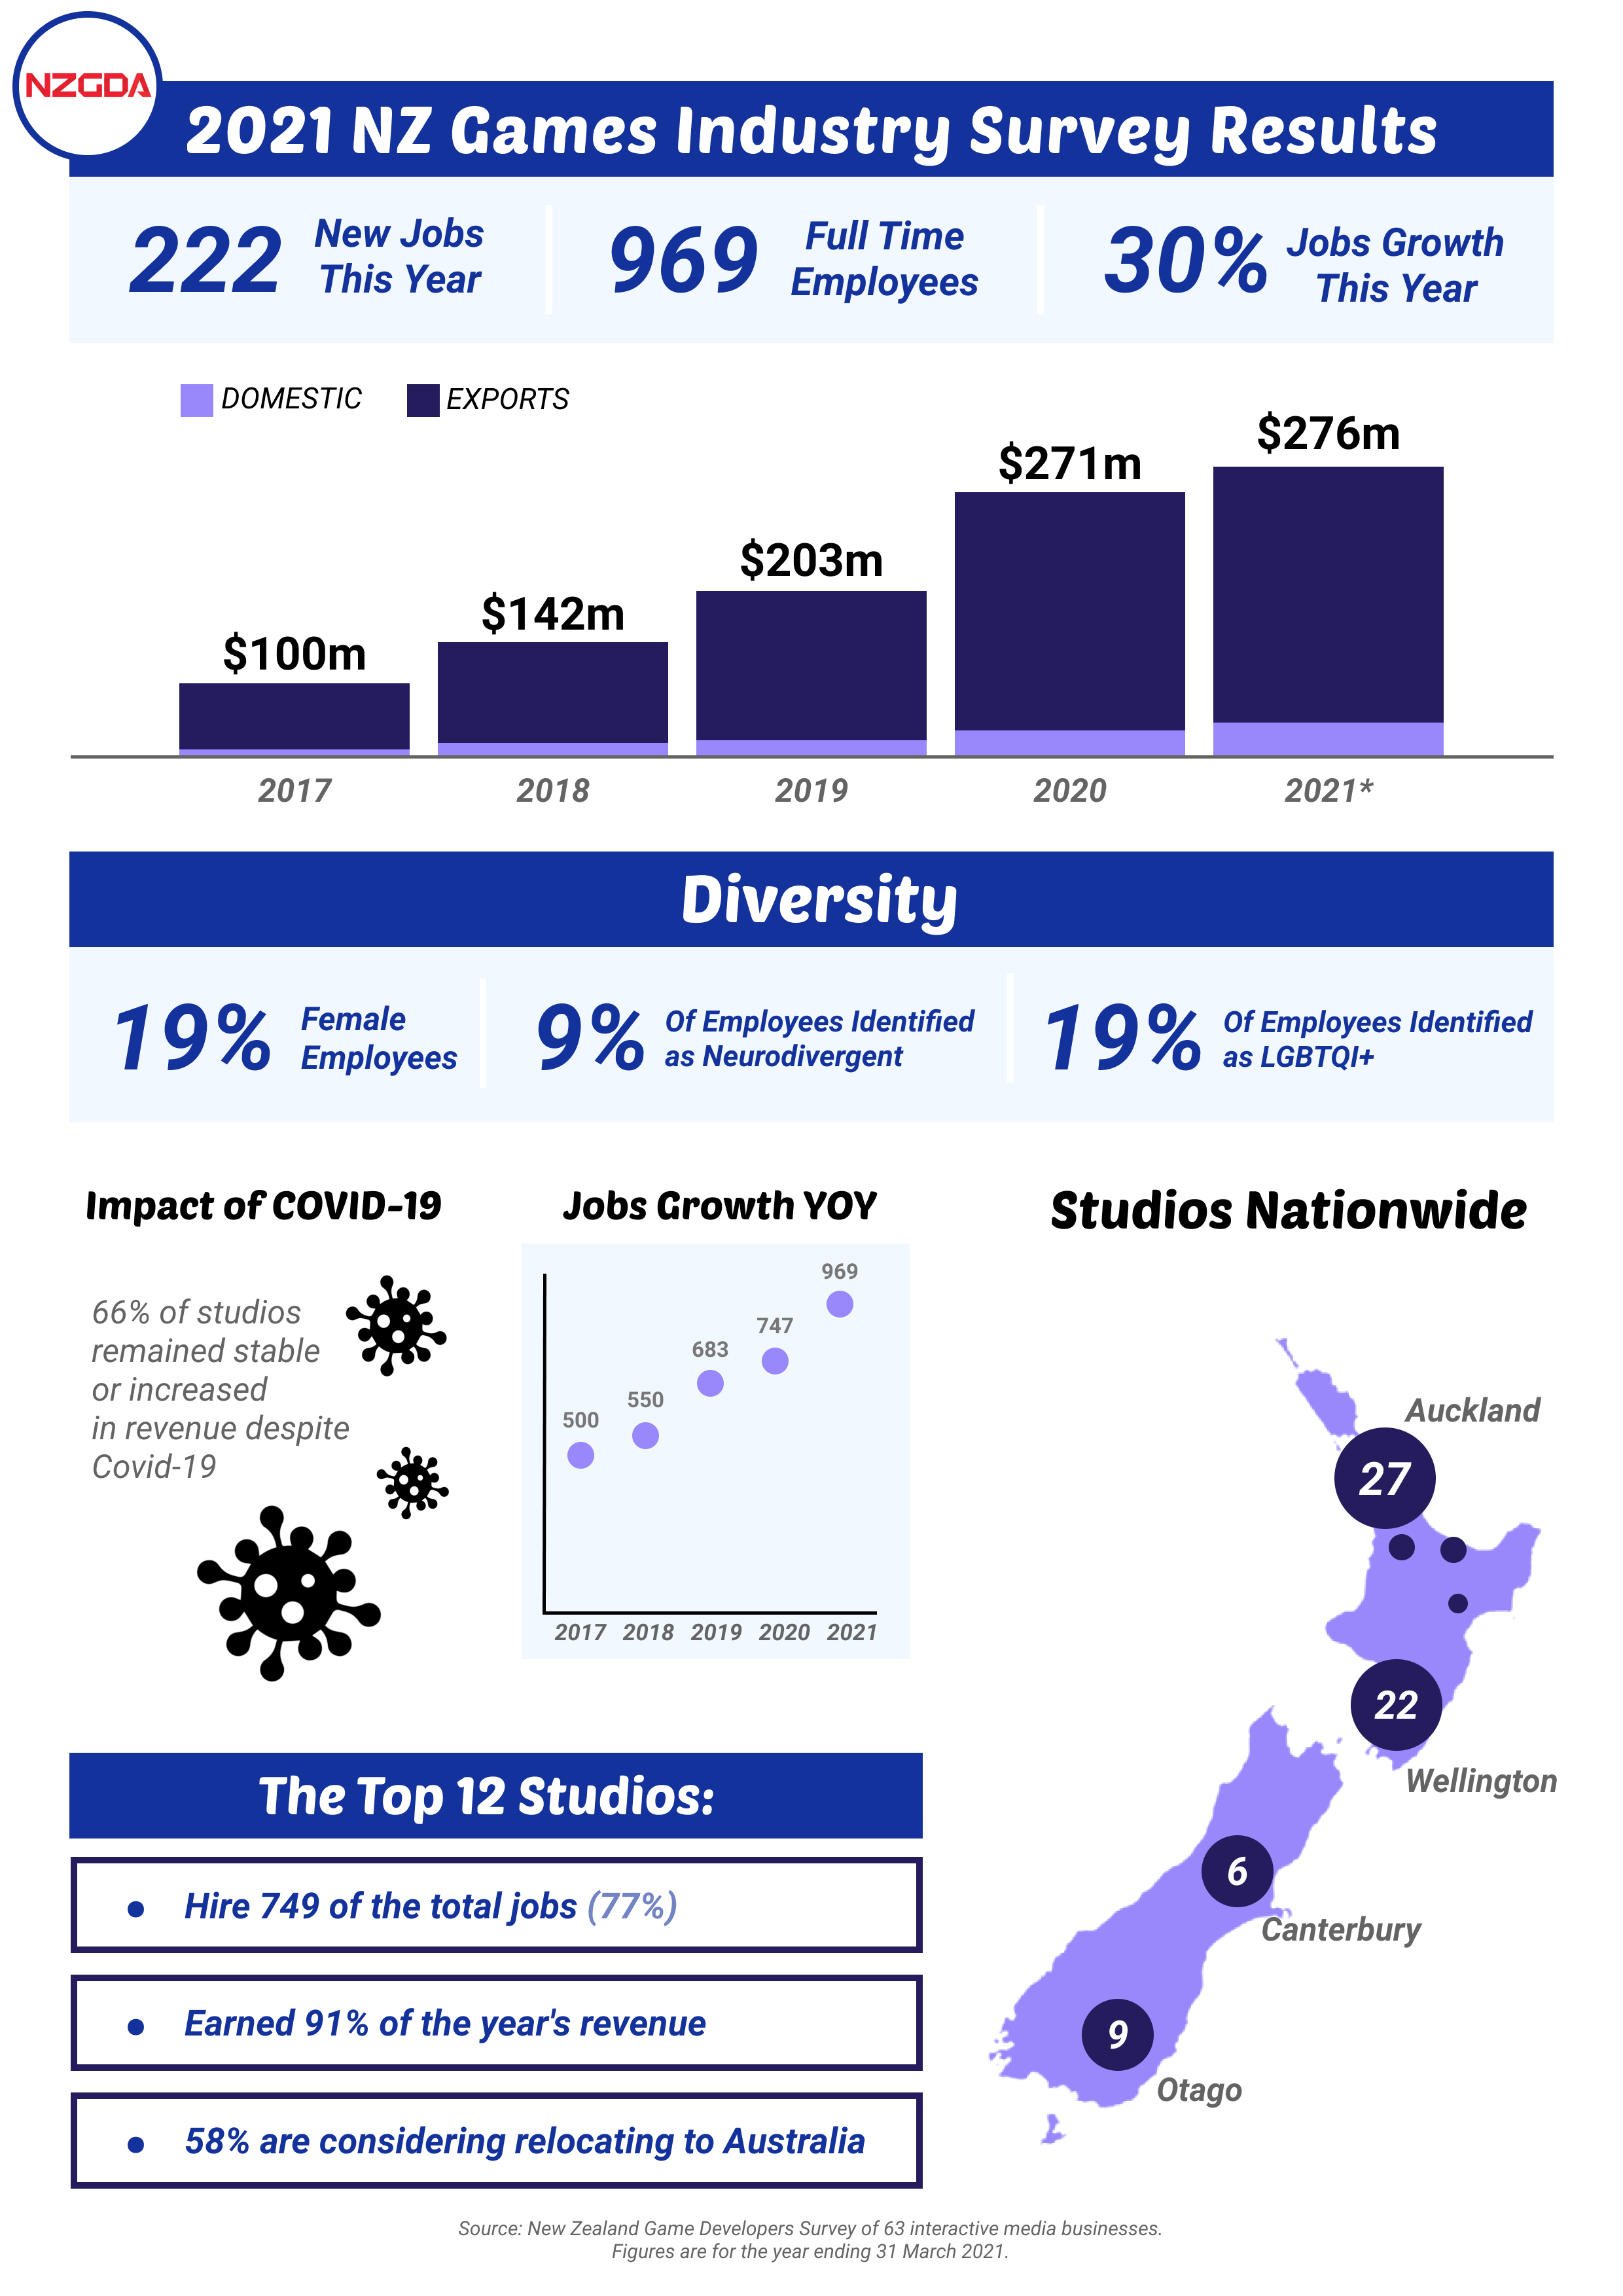 NZGDA Survey Results 2021